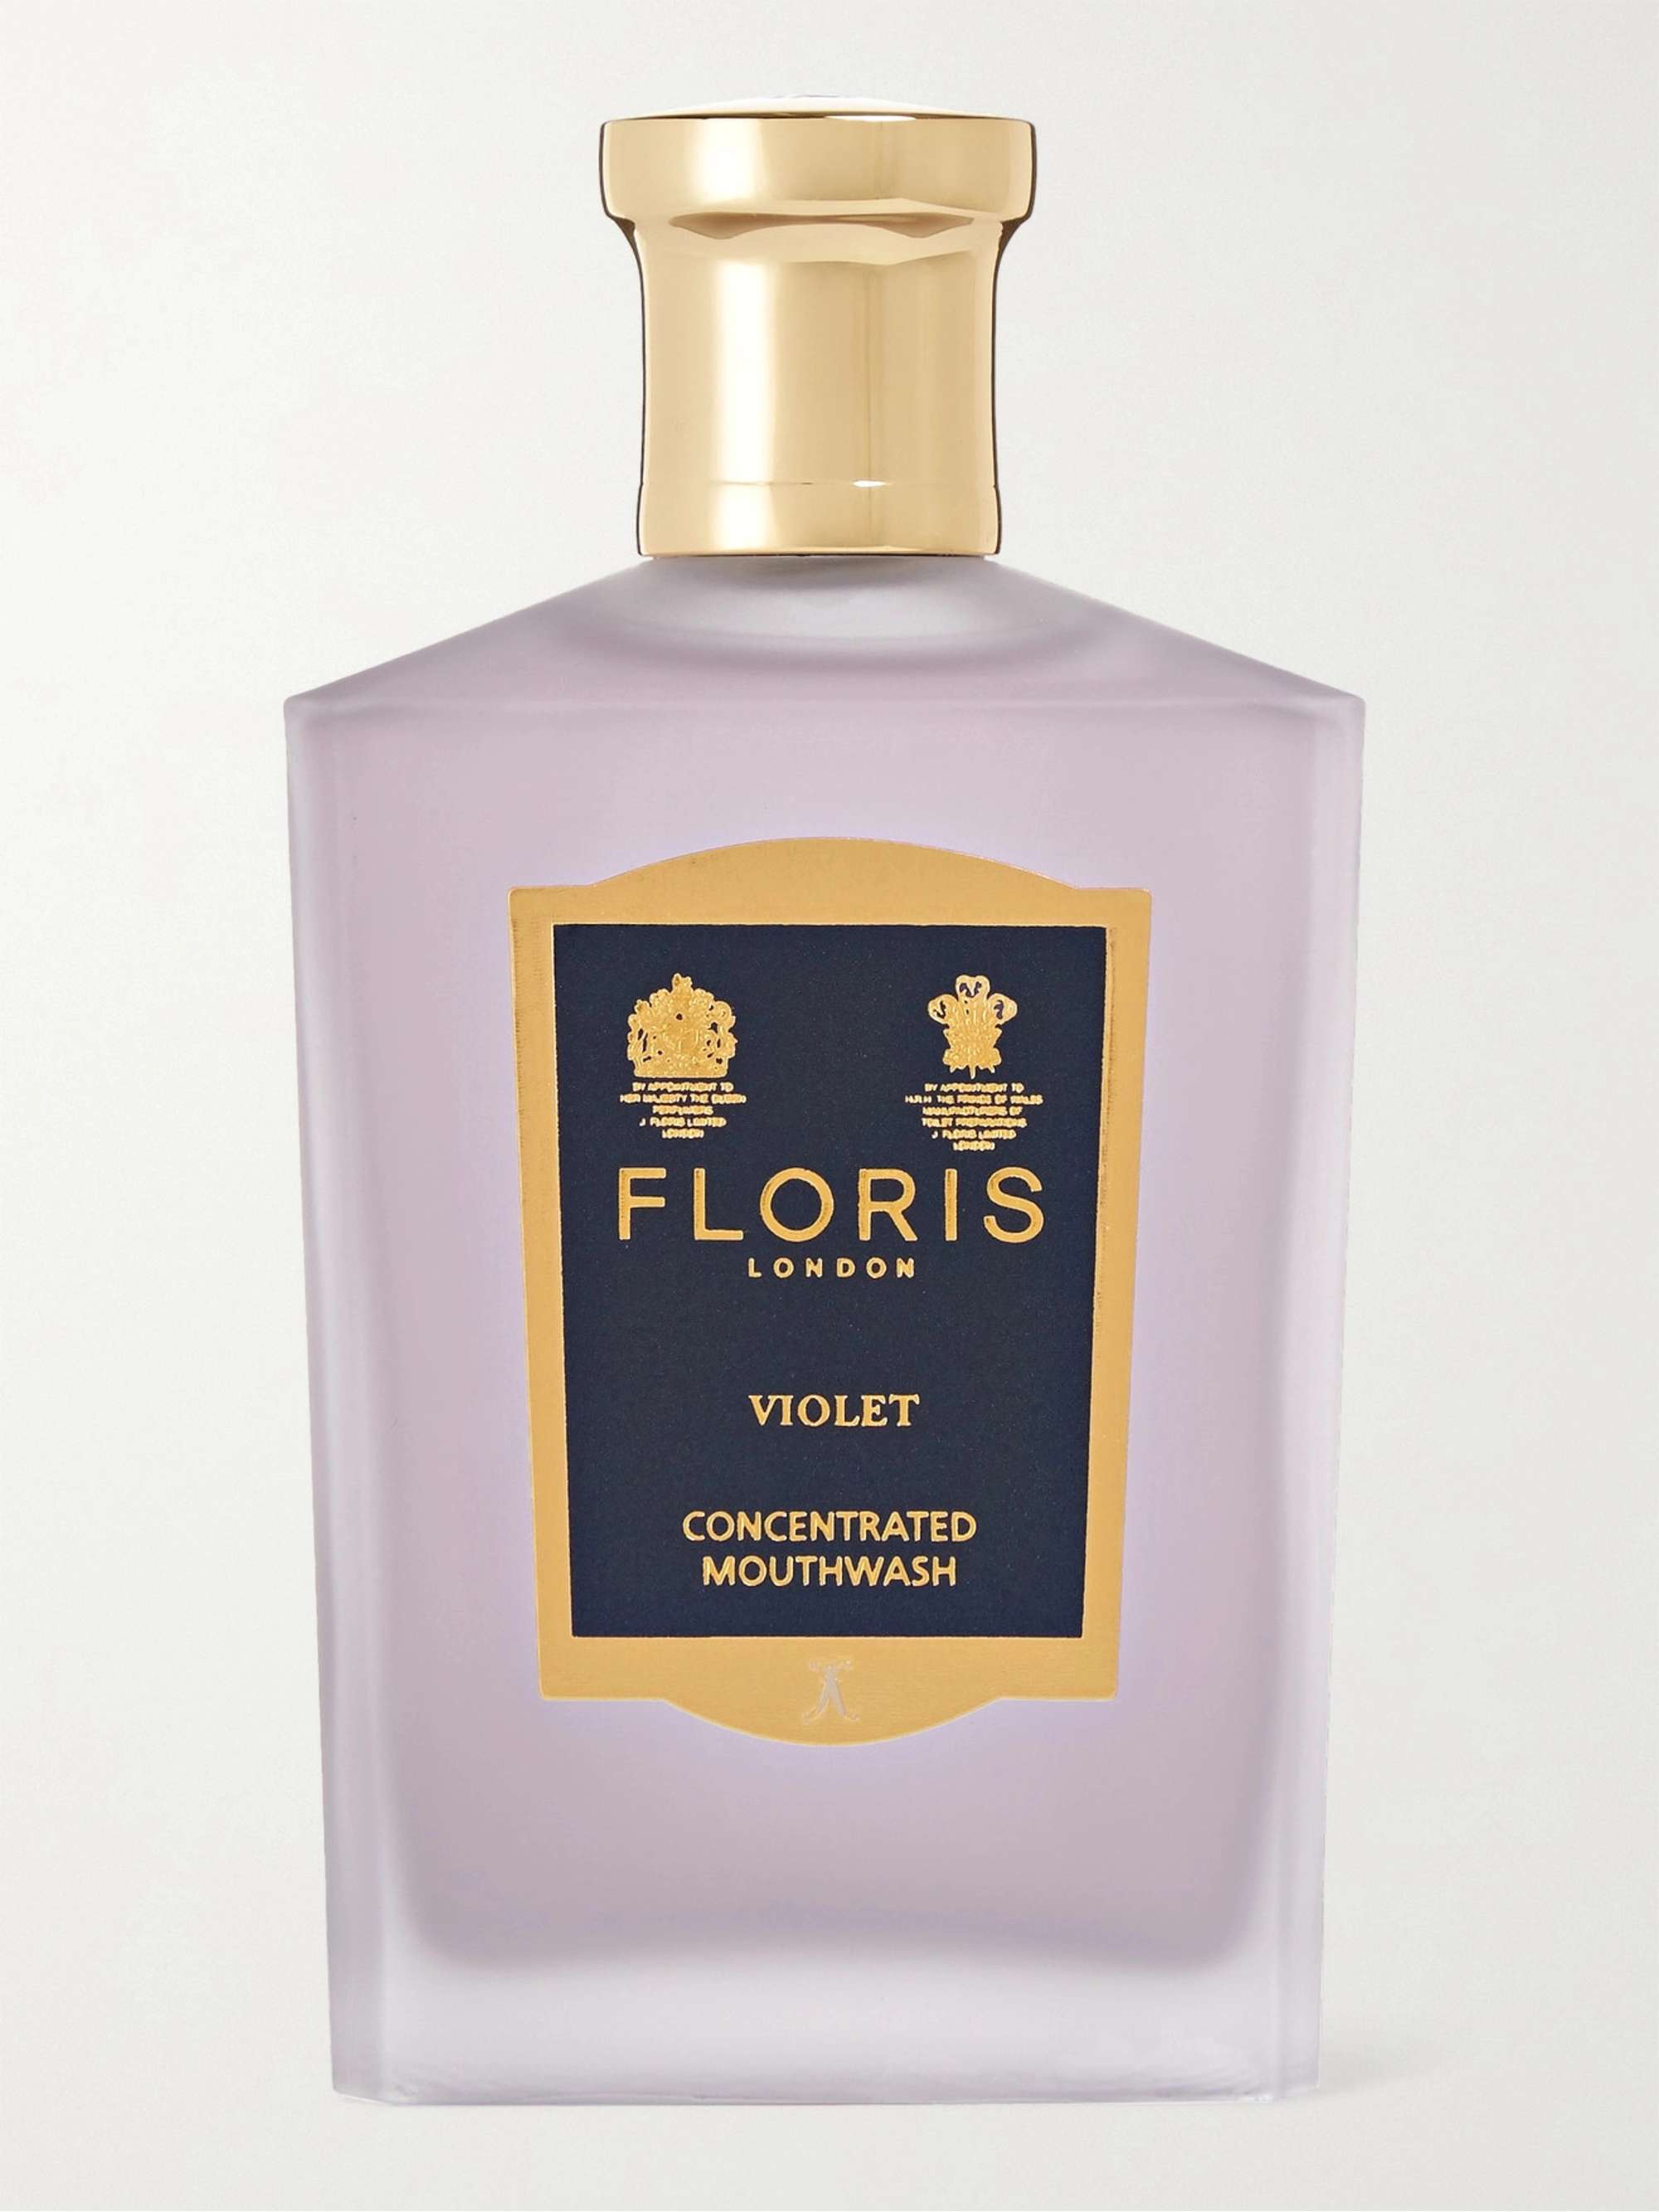 FLORIS LONDON Violet Concentrated Mouthwash, 100ml